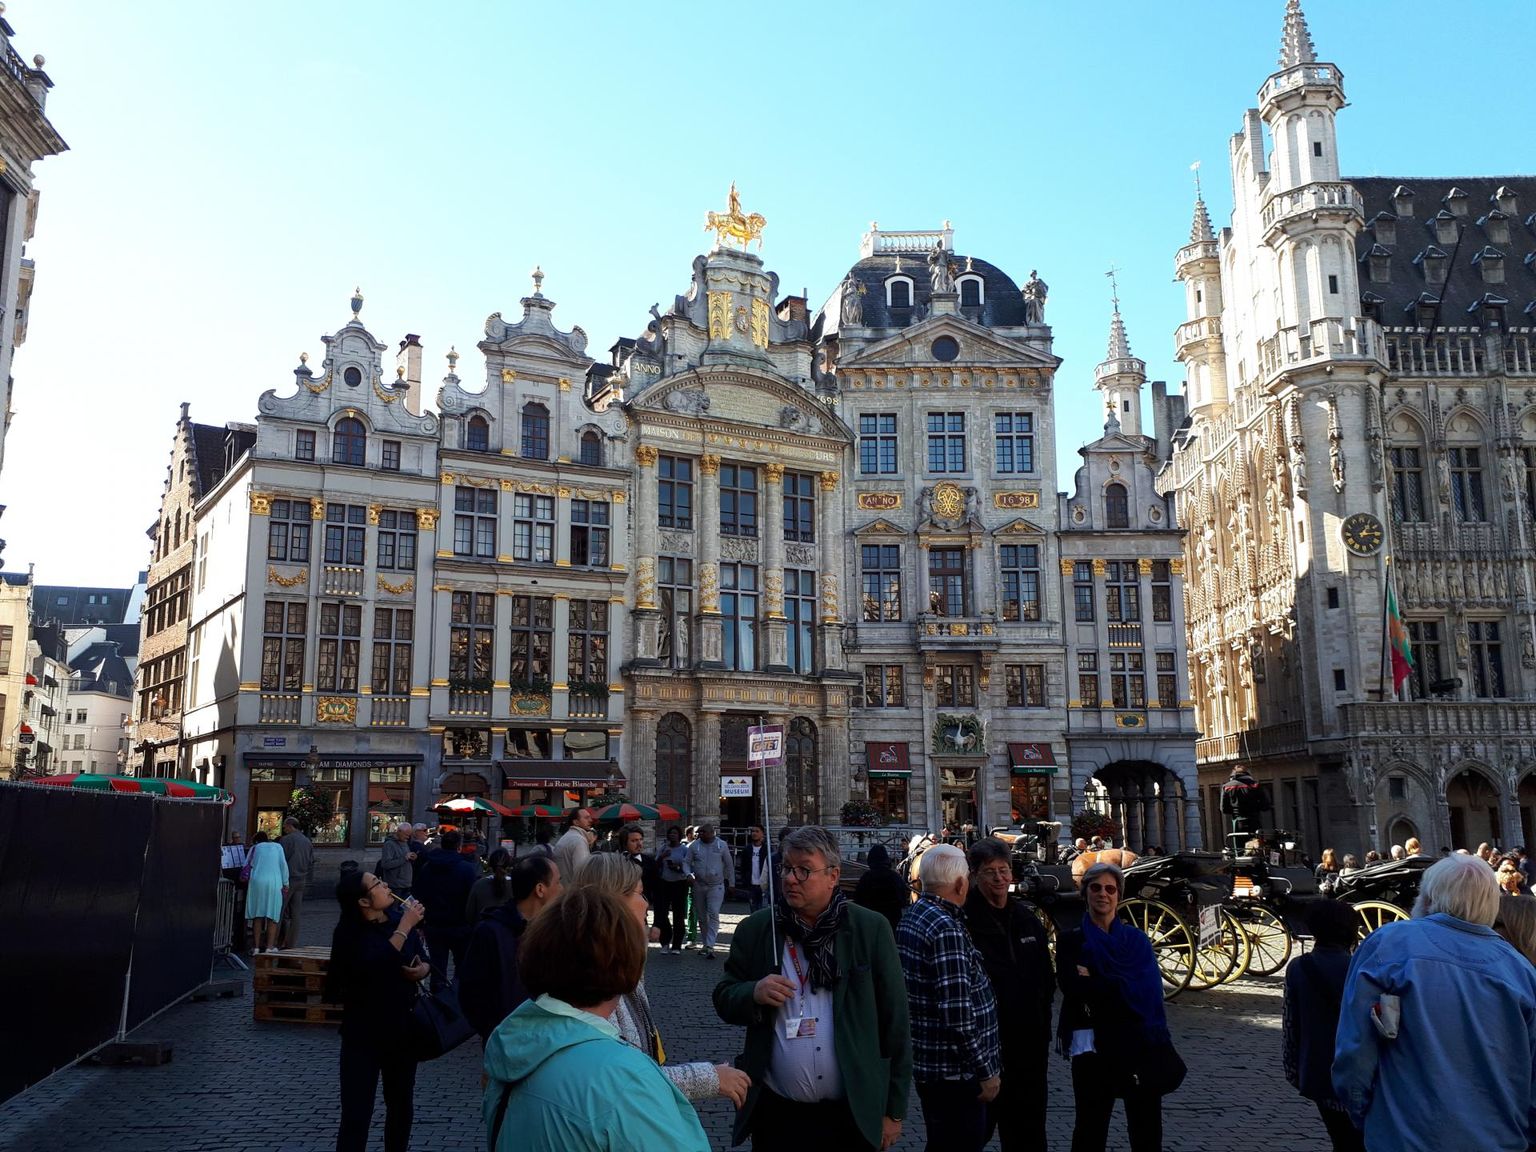 Brüsseli vanalinna tullakse imetlema kogu maailmast